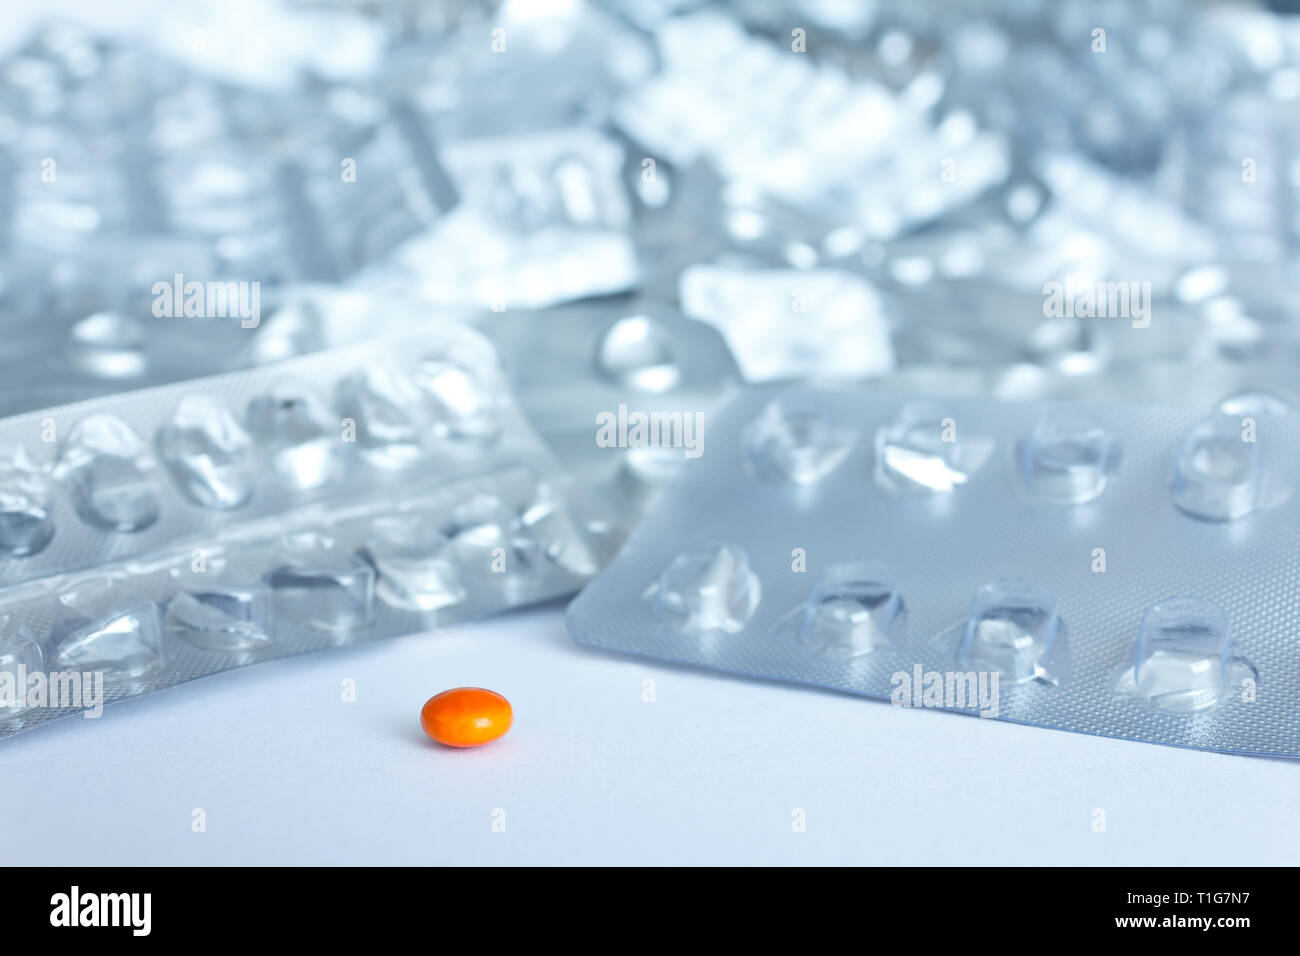 Eine einzige Pille vor vielen leeren blister Pakete auf weißem Hintergrund, Drogenmissbrauch Konzept Stockfoto